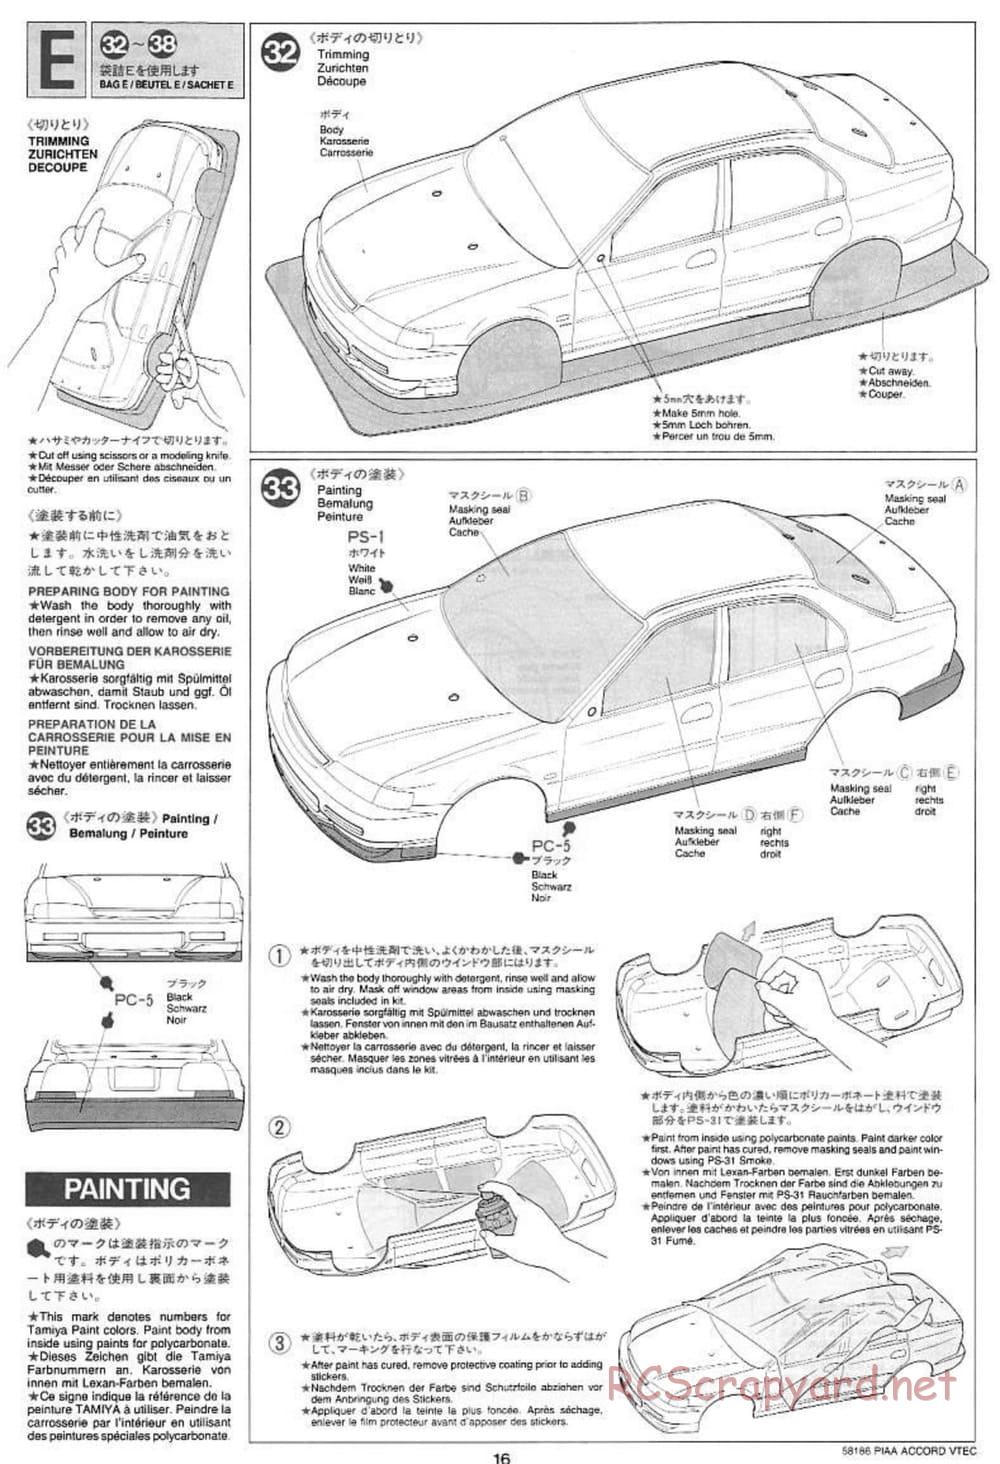 Tamiya - PIAA Accord VTEC - FF-01 Chassis - Manual - Page 16